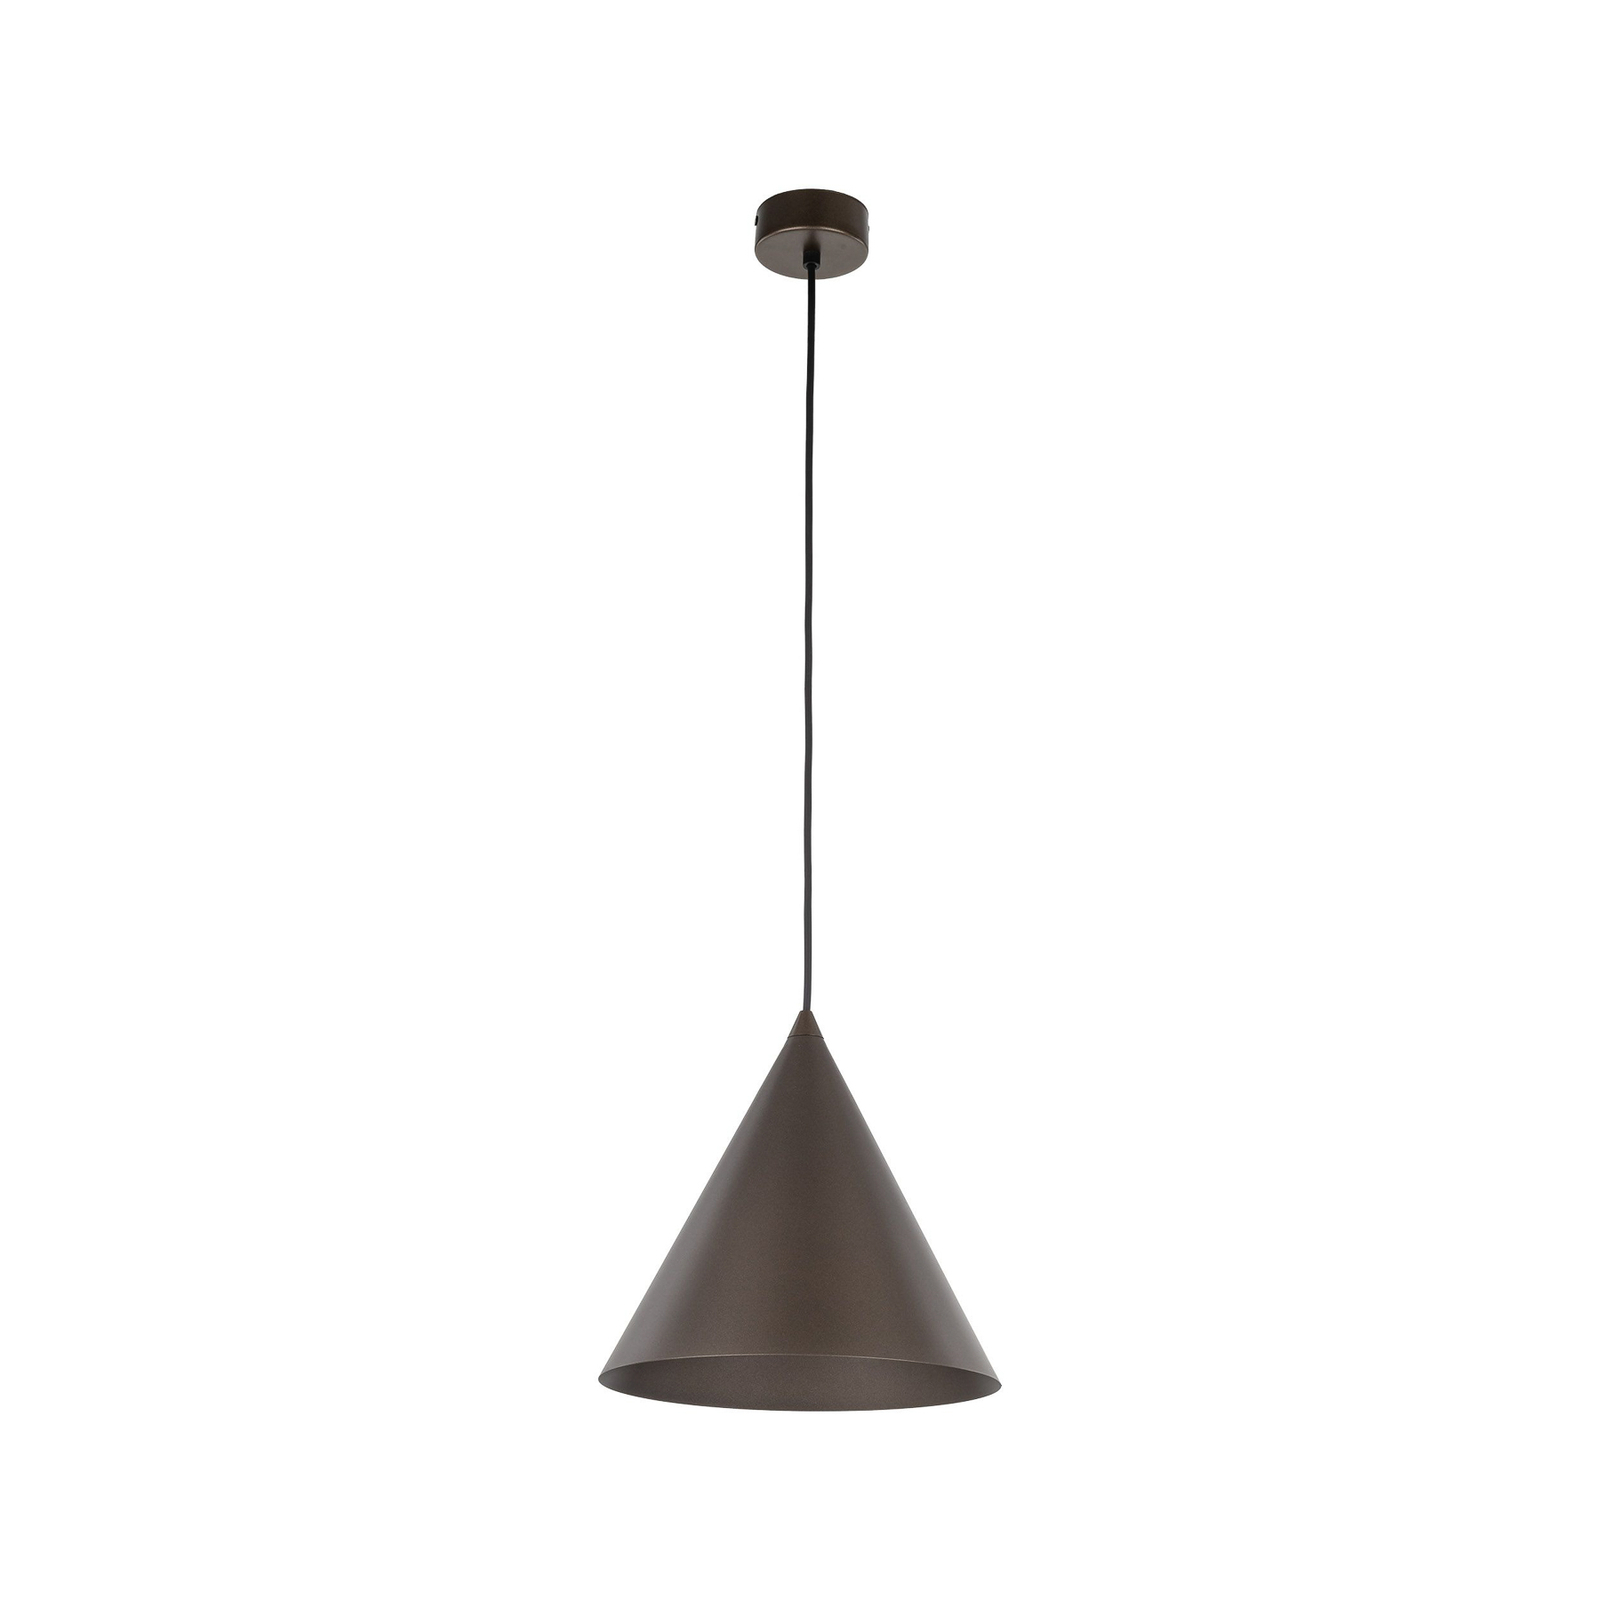 Viseća lampa Cono, jedna žarulja, Ø 25 cm, brončana boja